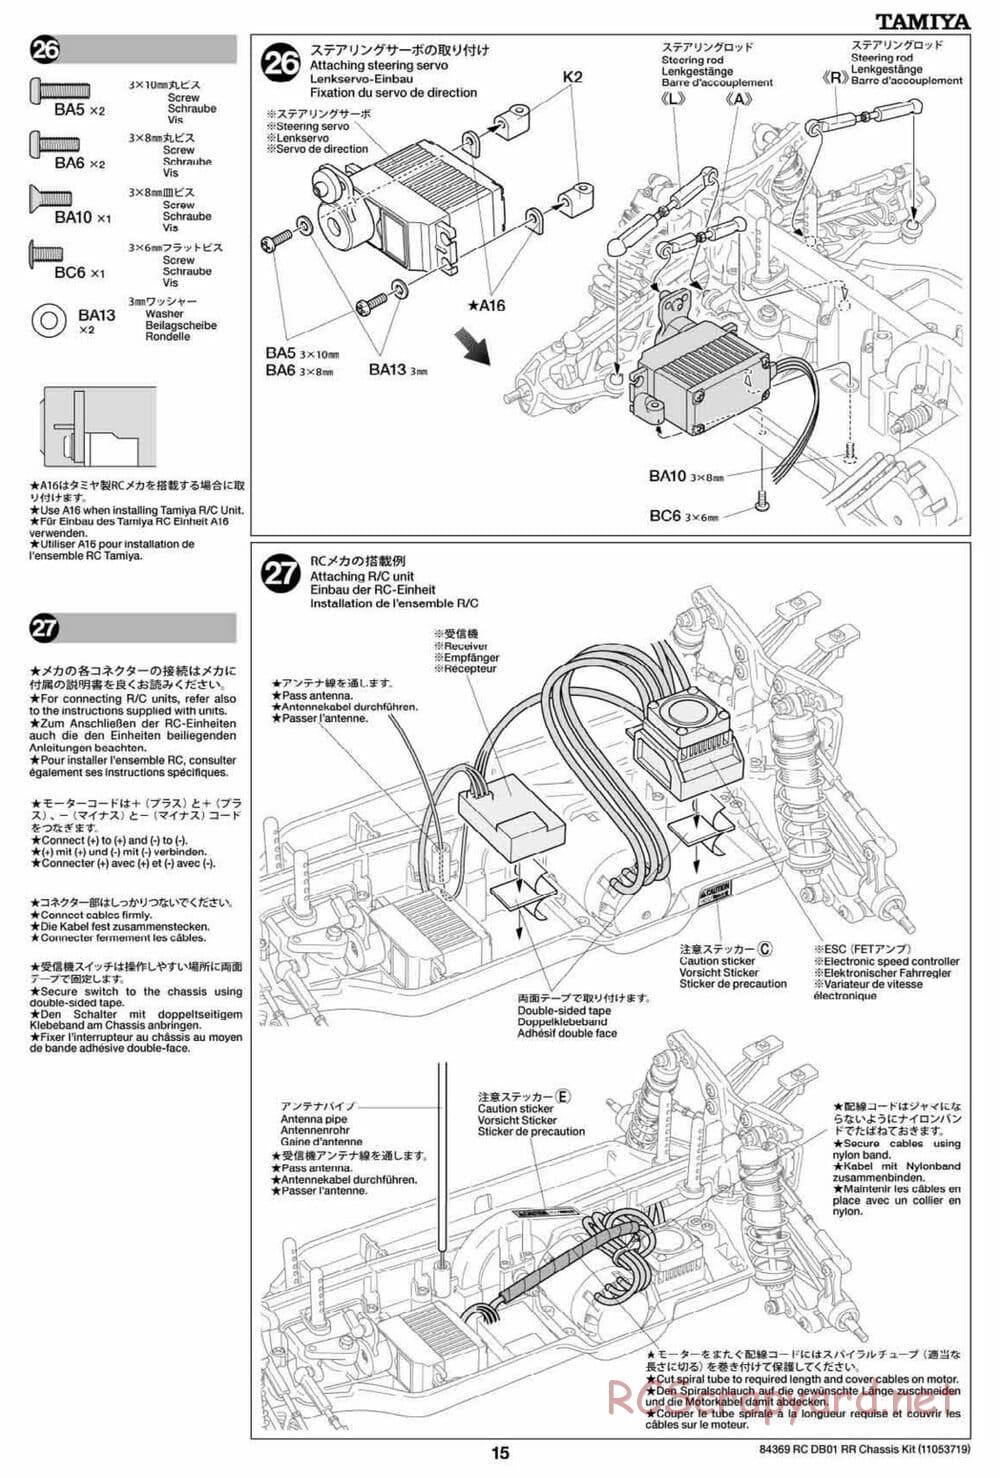 Tamiya - DB-01 RR Chassis - Manual - Page 15